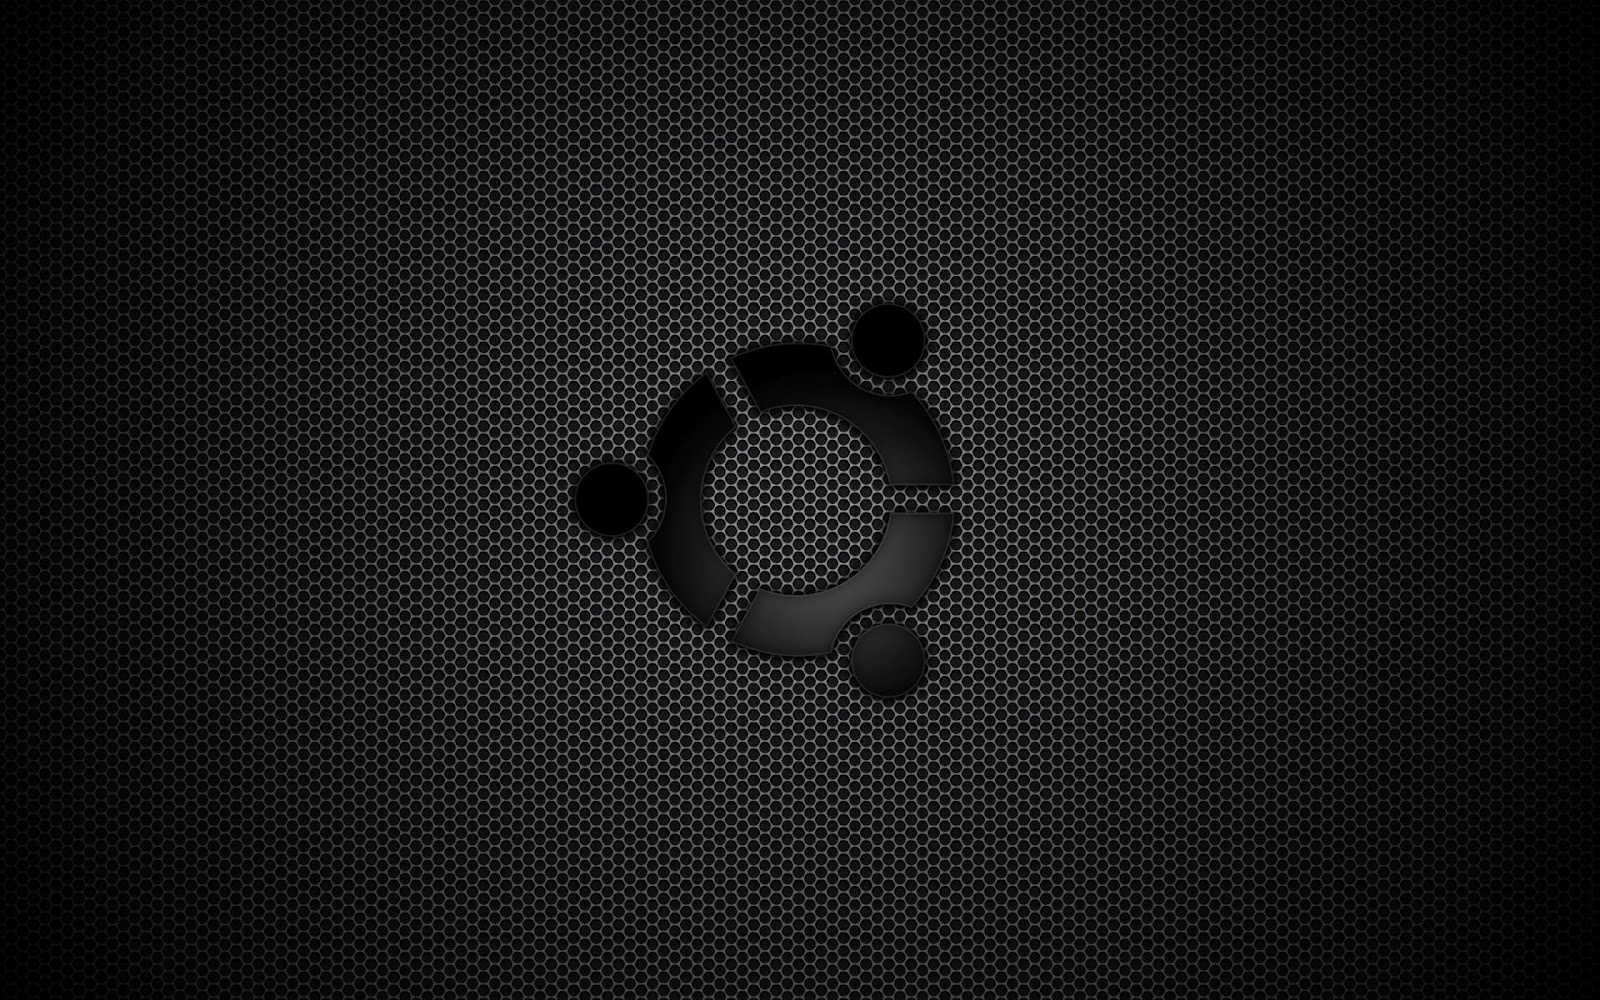 75+] Ubuntu Dark Wallpaper - WallpaperSafari